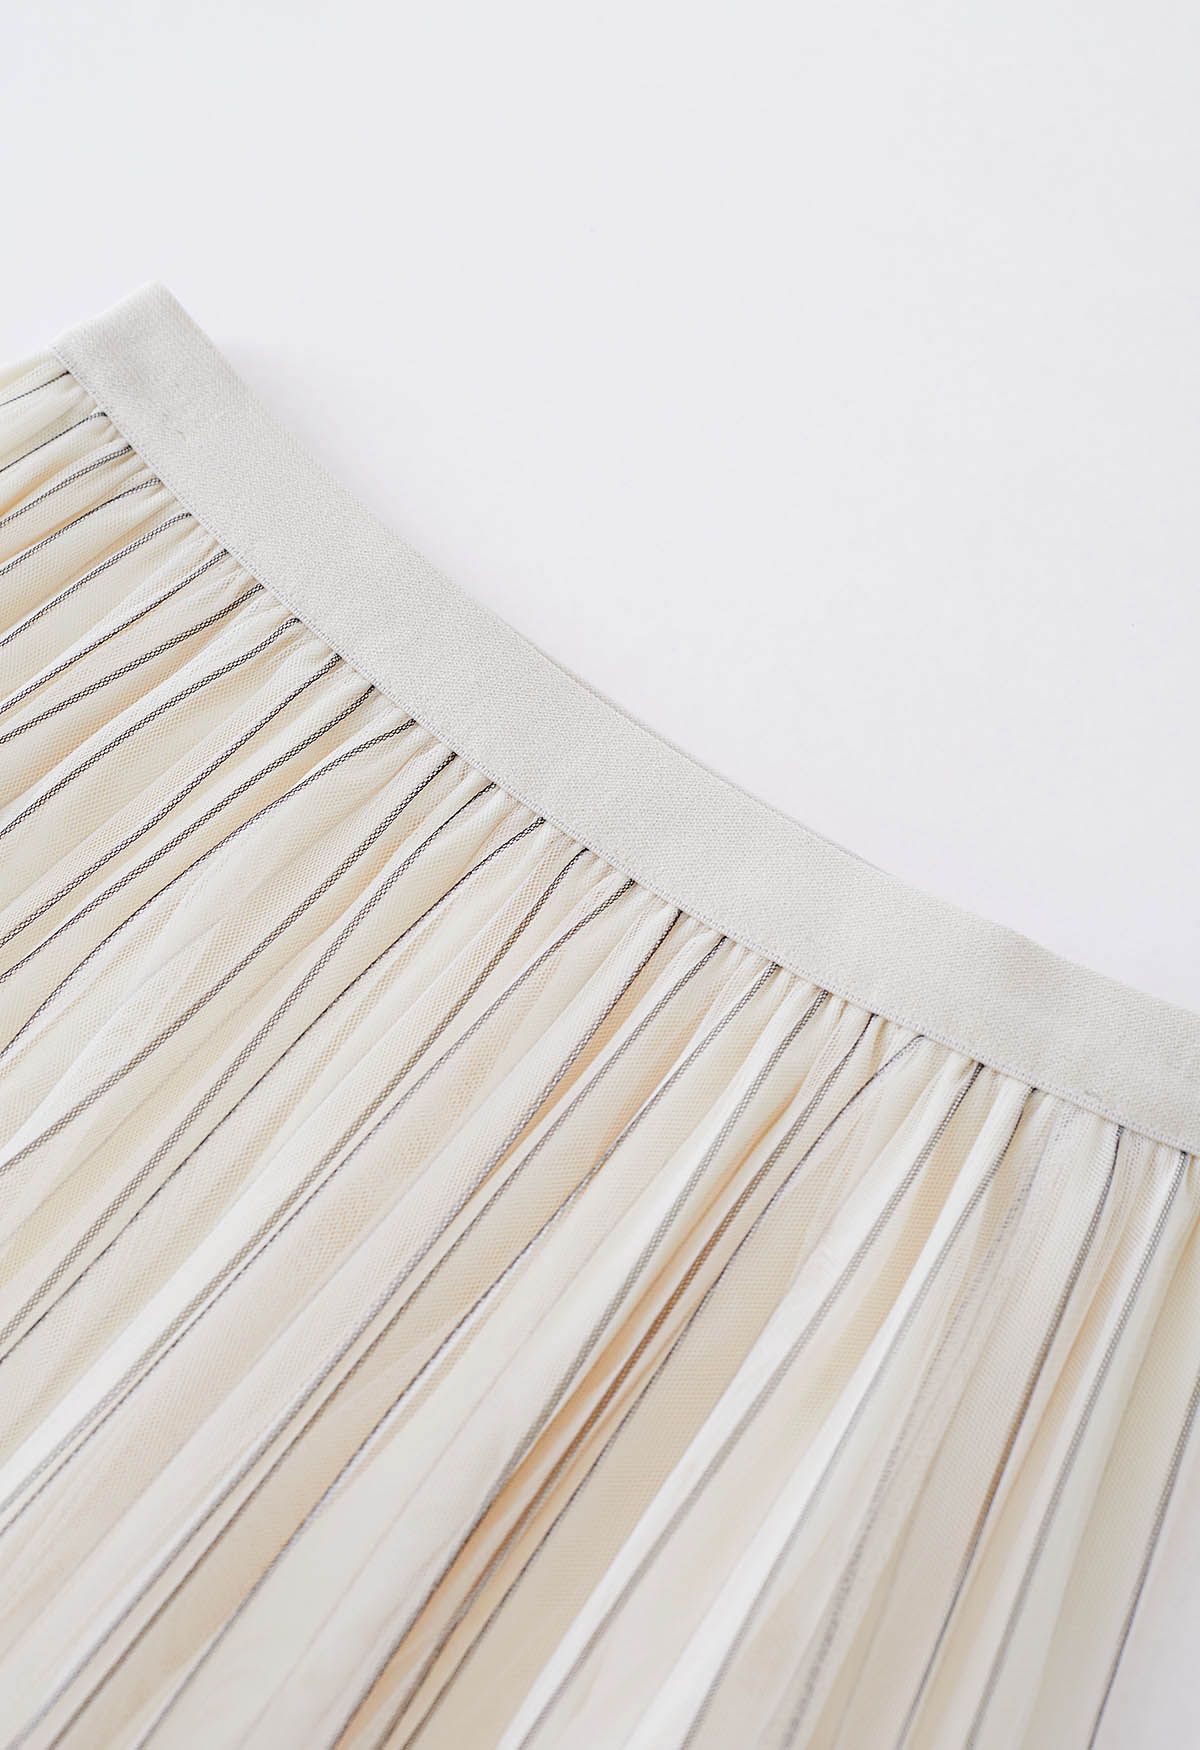 Falda midi de tul de malla plisada con líneas en contraste en color crema